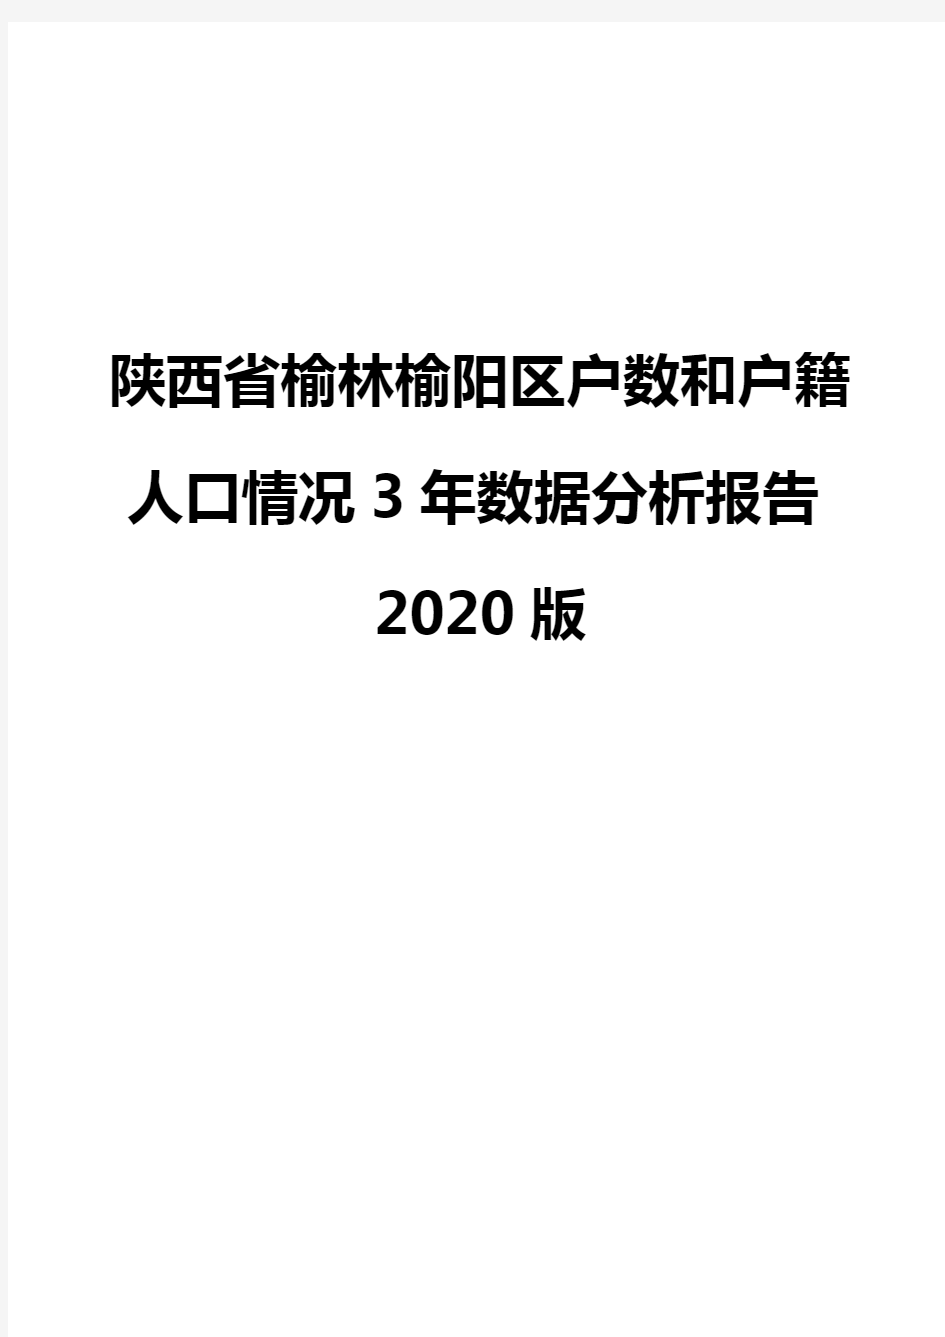 陕西省榆林榆阳区户数和户籍人口情况3年数据分析报告2020版